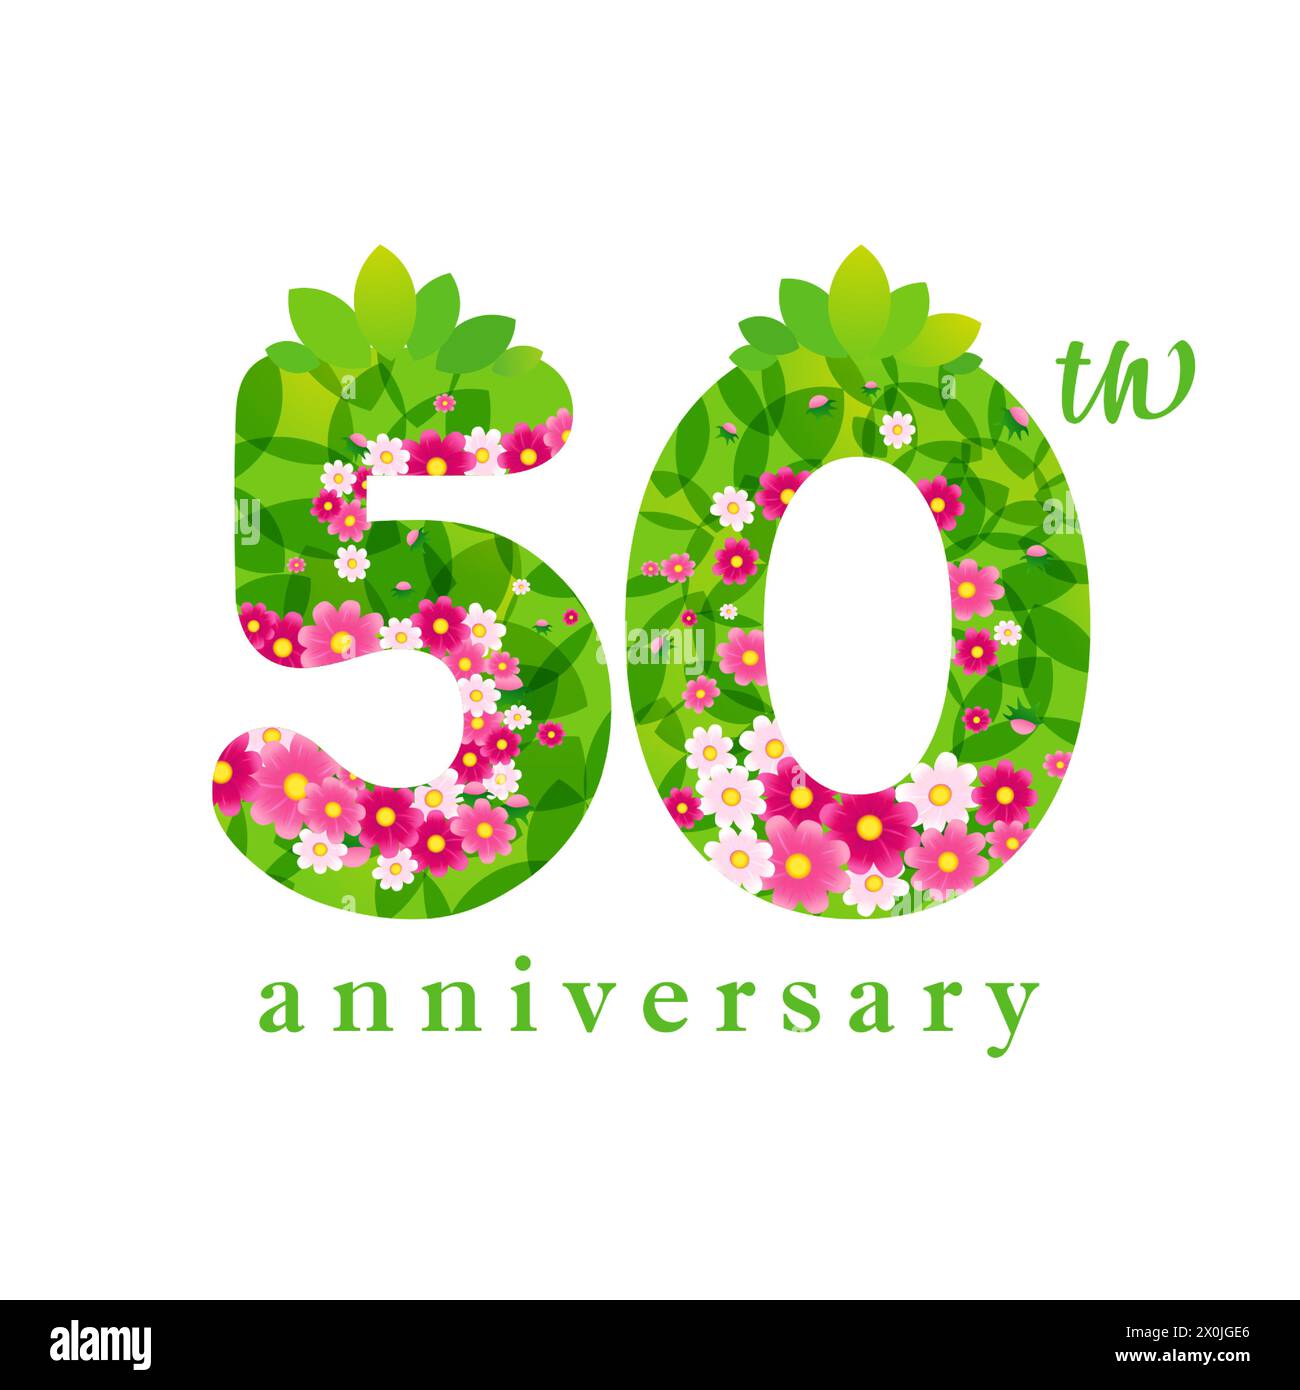 Sommer-Logo zum 50. Jahrestag. Kreative Zahl 5 und 0 mit grünen Blättern und Blumen. 3D-Elemente. Niedlicher floraler Hintergrund mit Vektor-Clipping-Maske. Stock Vektor